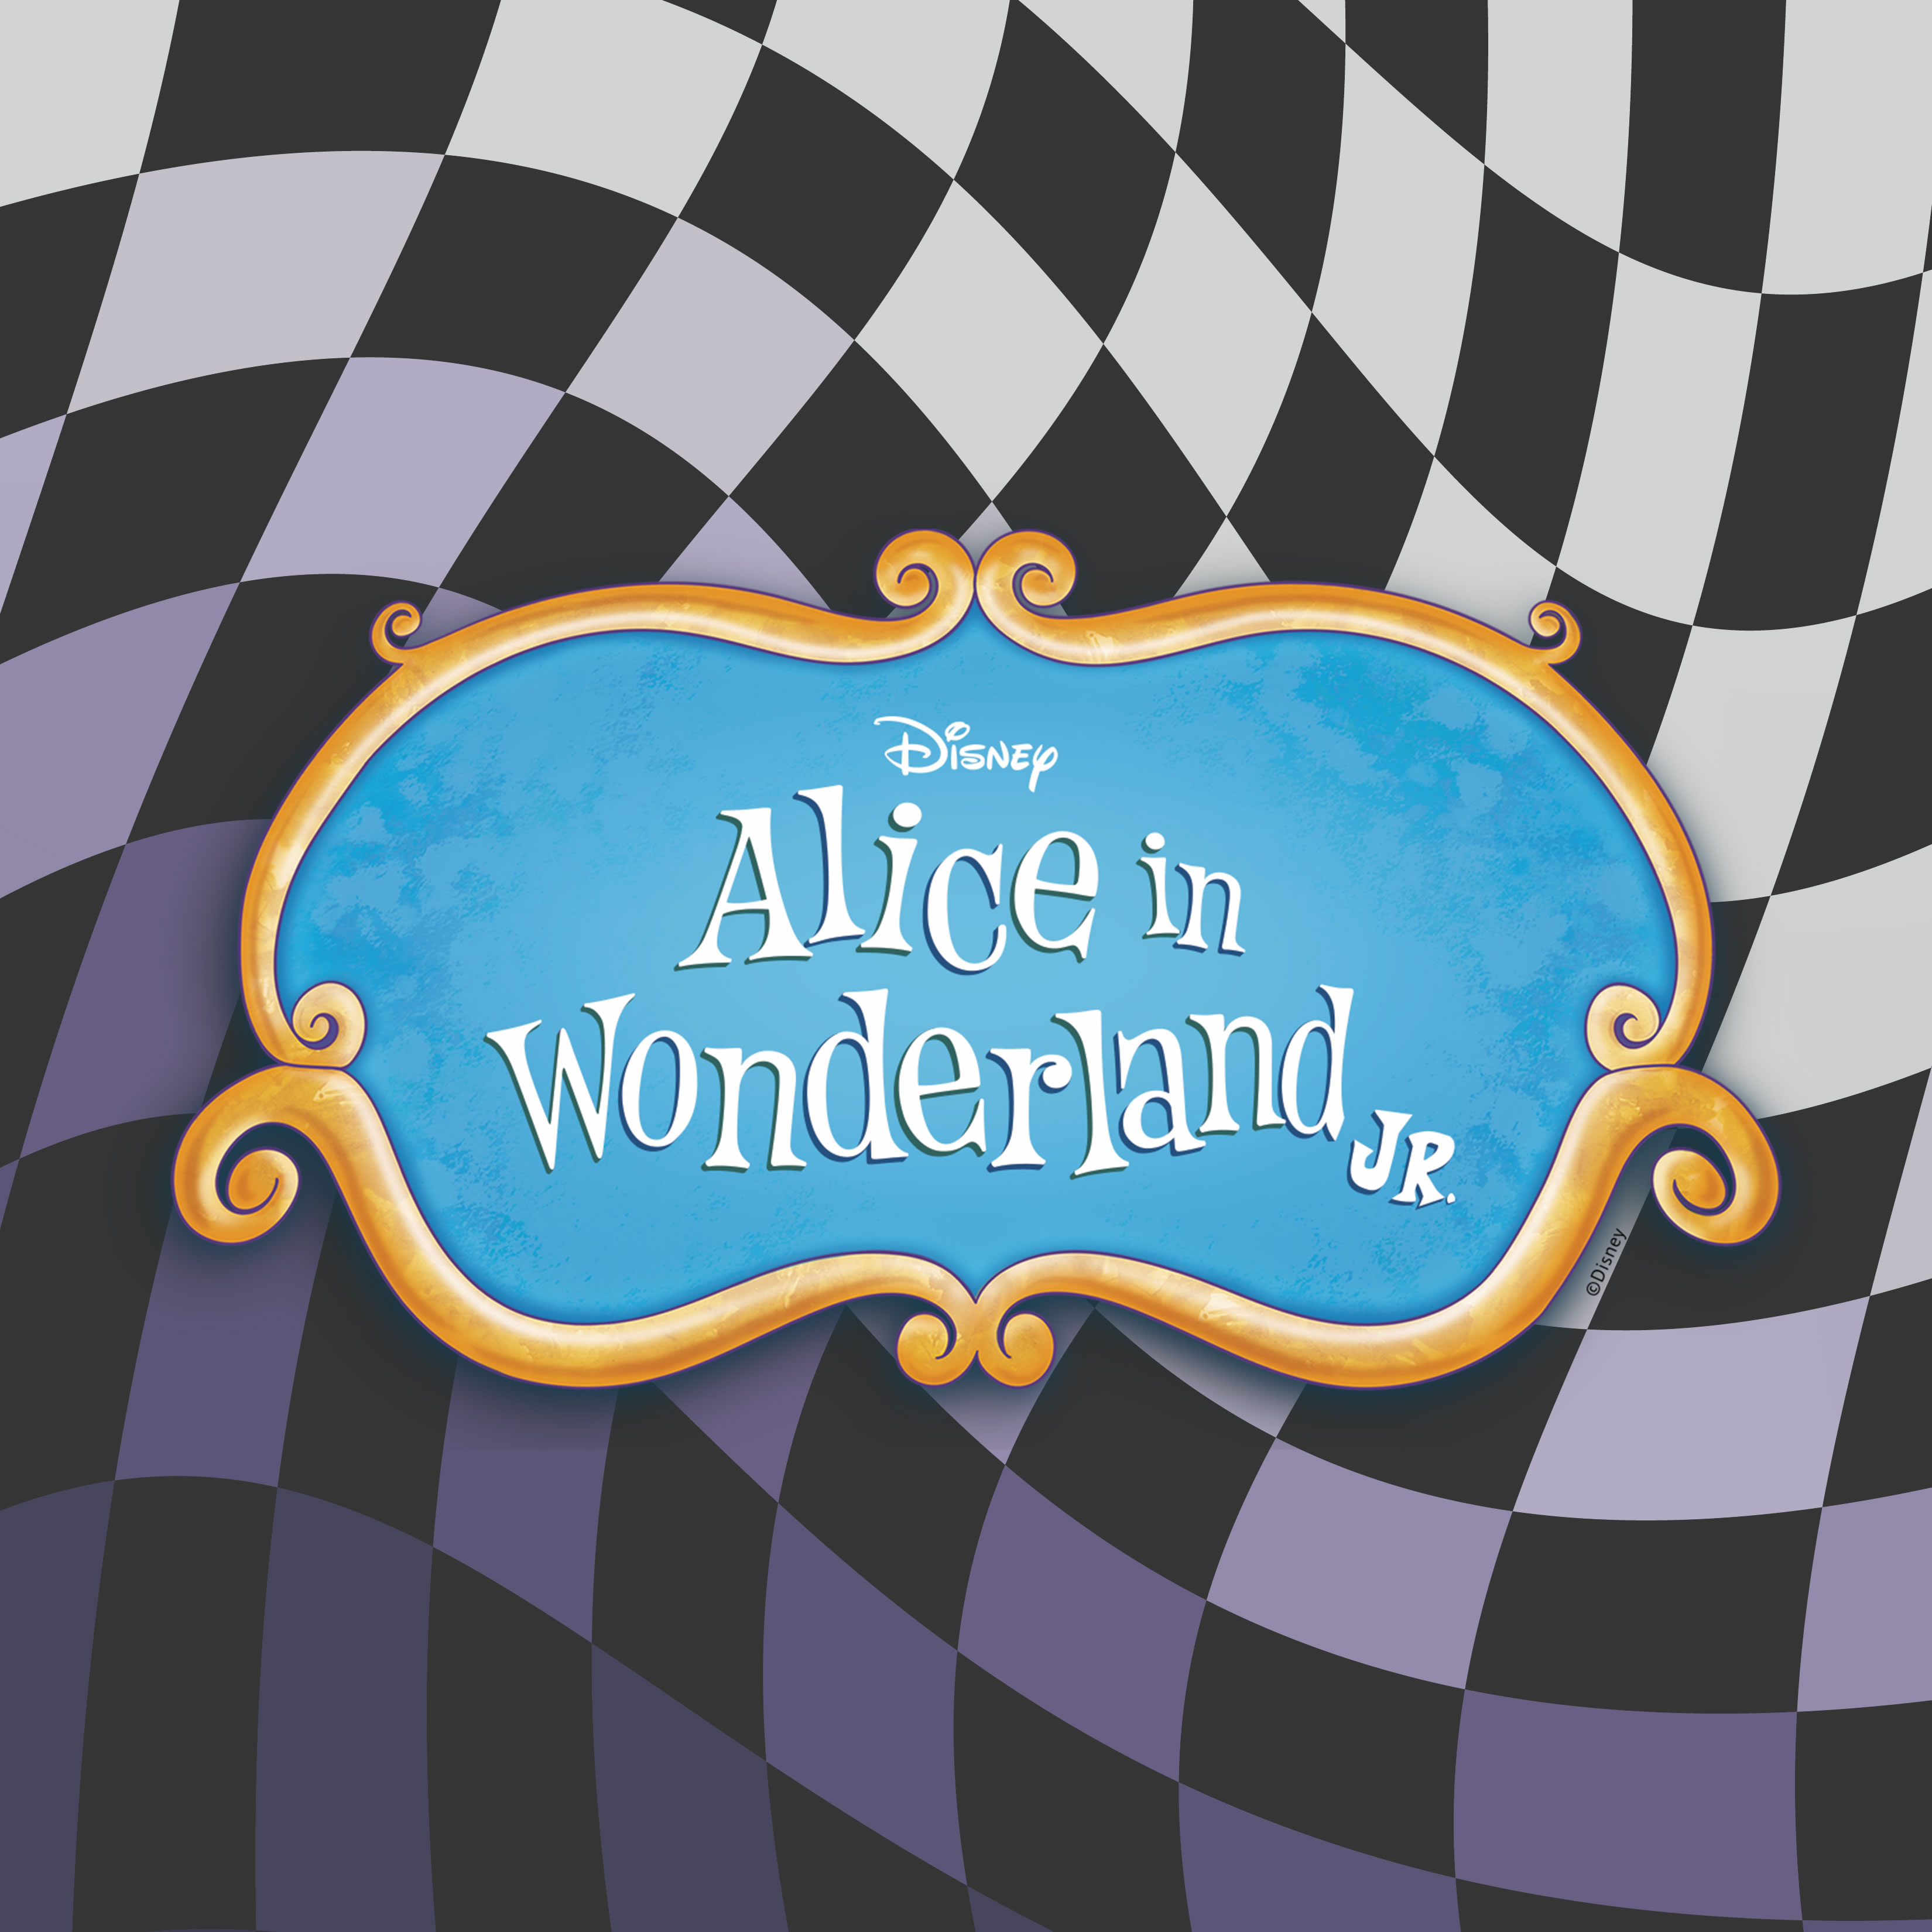 Alice logo